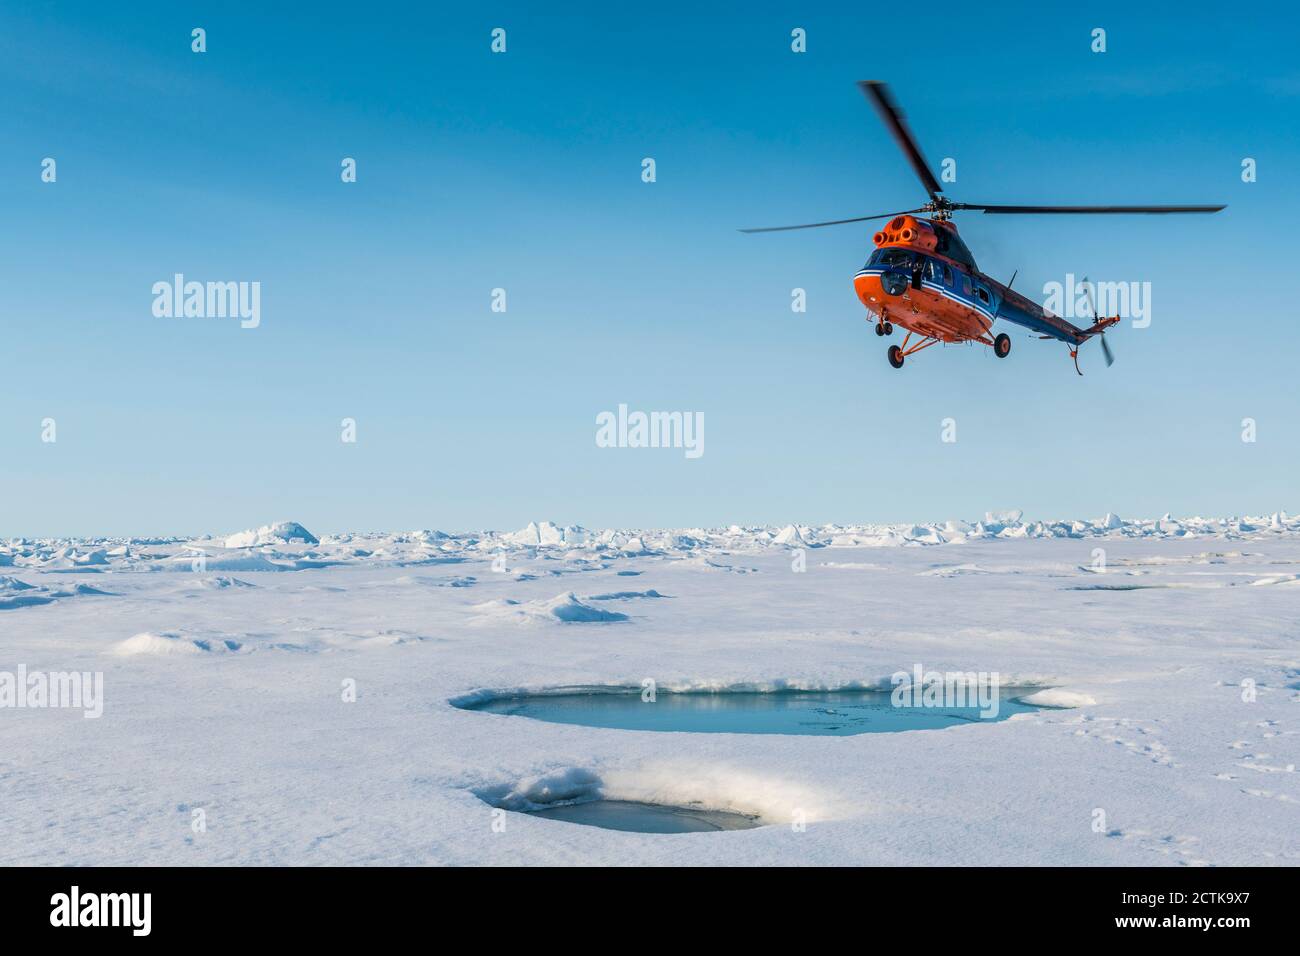 Hélicoptère survolant la fonte de glace au pôle Nord Banque D'Images